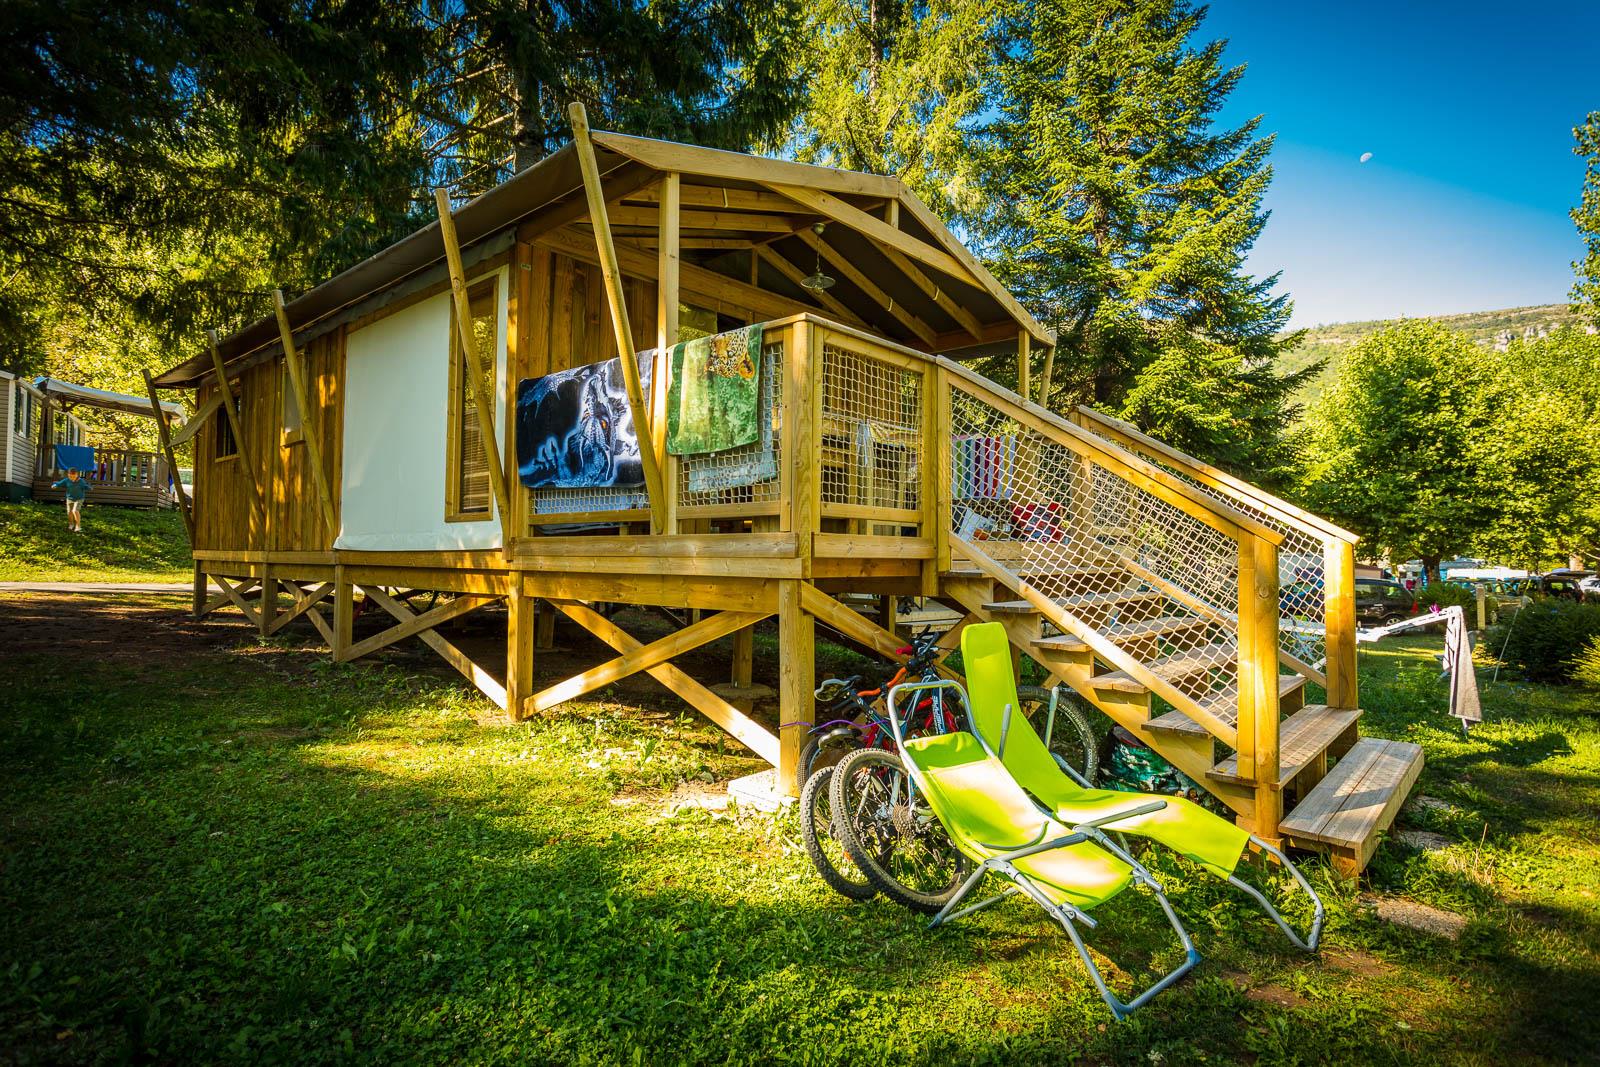 Mietunterkunft - Lodge Cabin Premium Auf Stelzen 32 M²(Mit Sanitäranlagen), 2 Schlafzimmer, Terrasse + Tv - Camping Le Pont du Tarn